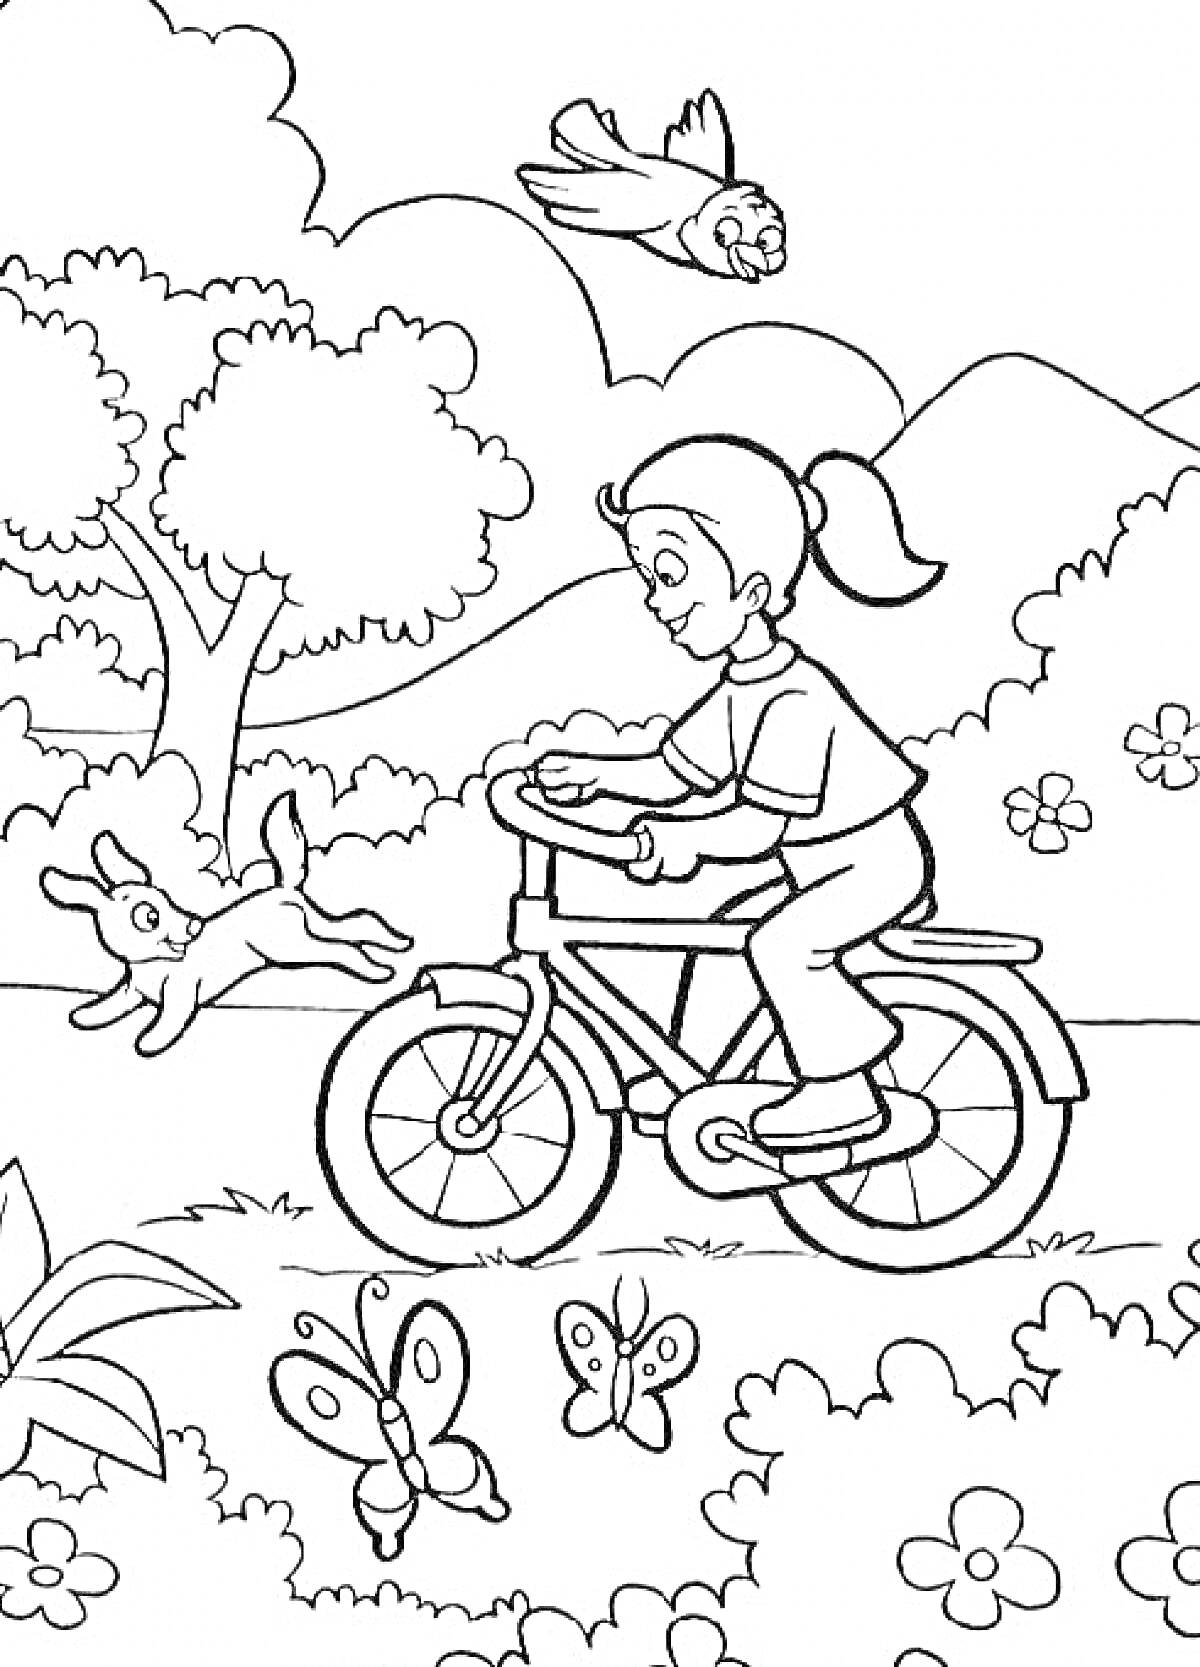 Раскраска Девочка на велосипеде в летнем пейзаже с природой, собачкой, летящими птицами и бабочками